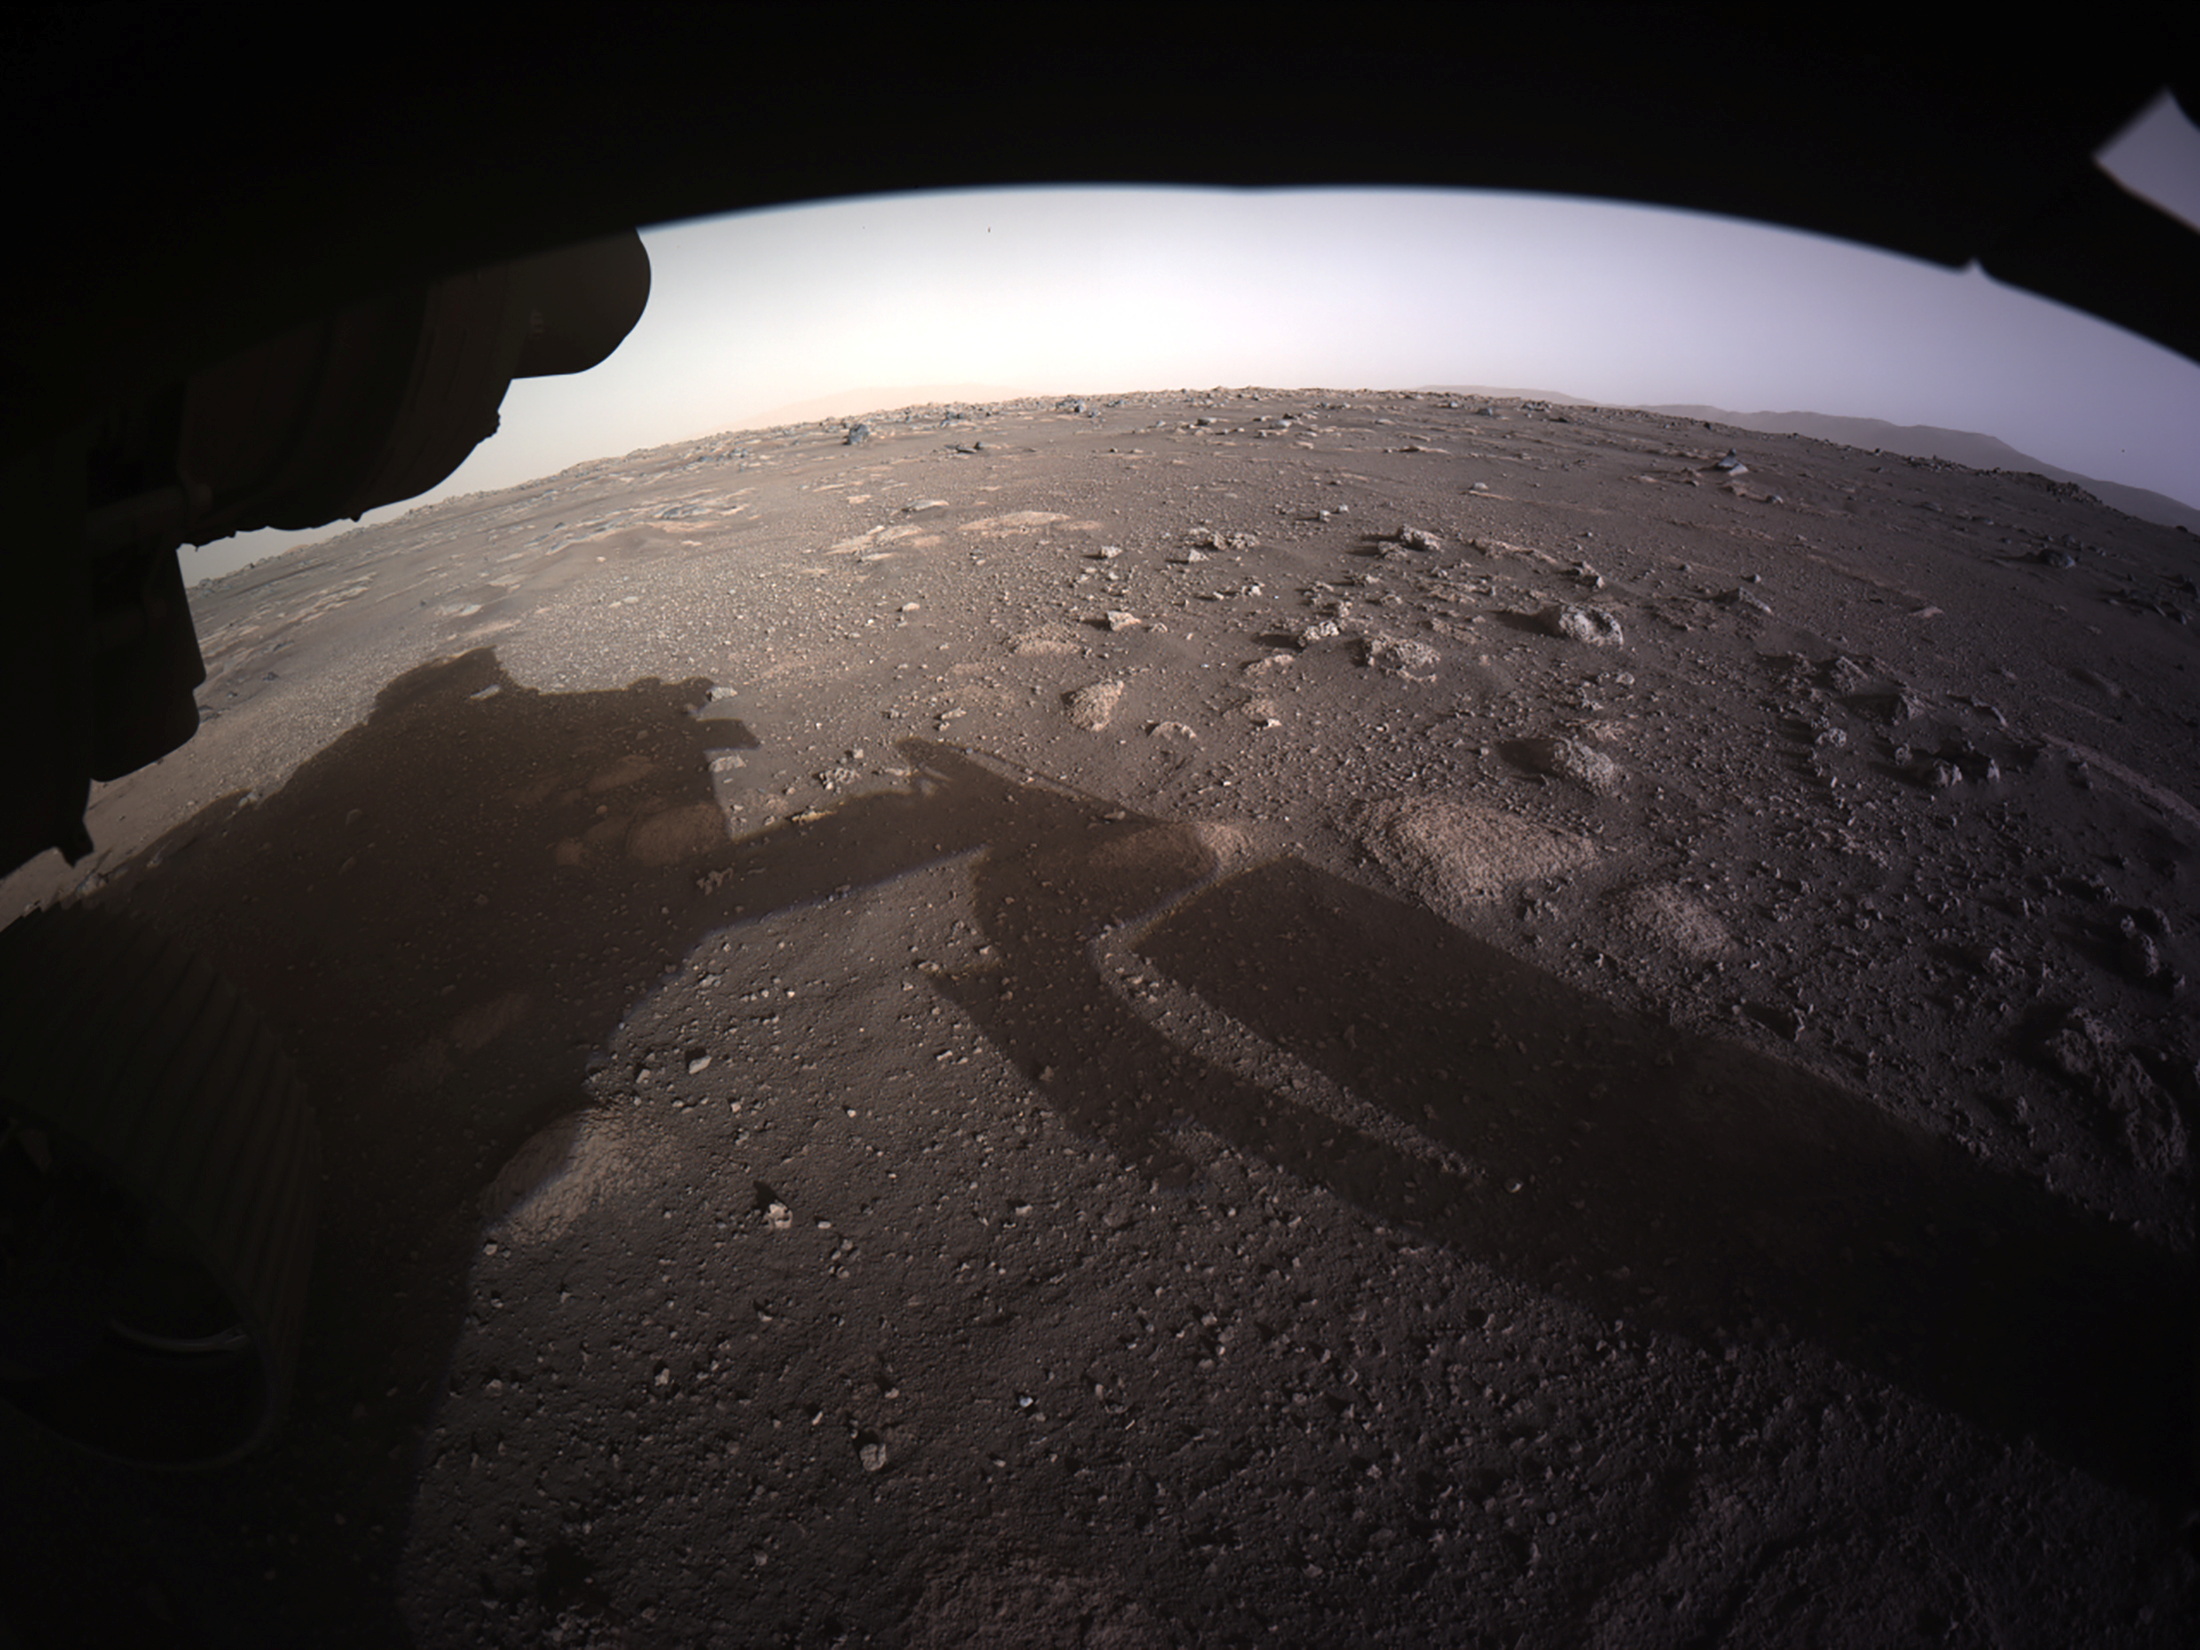 Después de casi 470 millones de kilómetros recorridos en siete meses, el rover Perseverance , similar en tamaño a su antecesor y gemelo en tamaño Curiosity que arribó a Marte en 2012, completó su viaje al planeta rojo con el objetivo de buscar rastros de vida pasada en el cráter Jezero - NASA/JPL-Caltech/Handout via REUTERS  